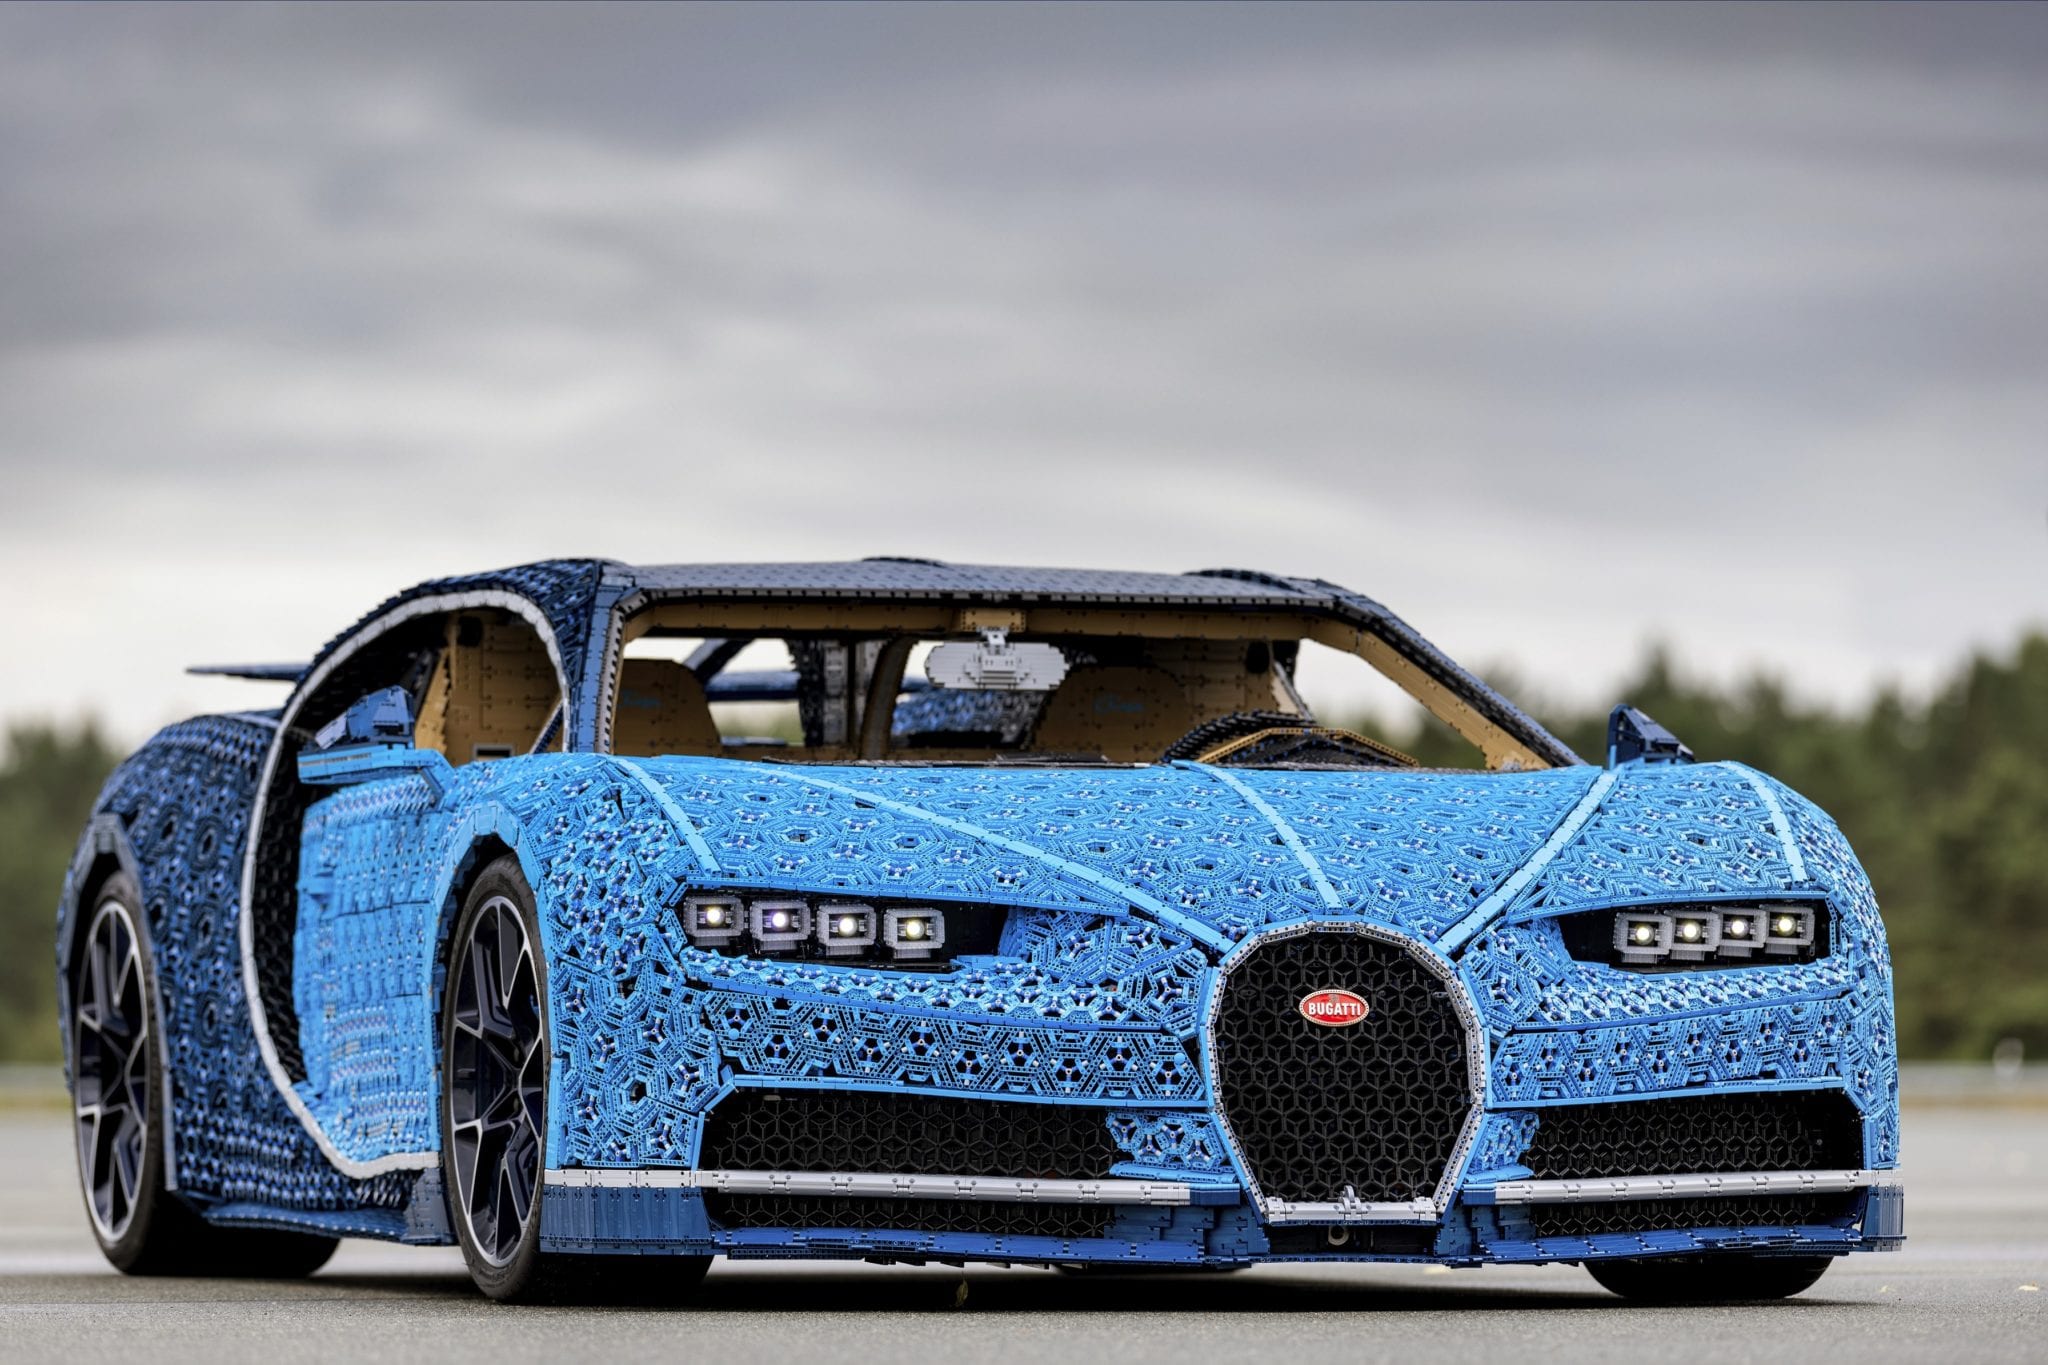 Mașina Bugatti Chiron realizată din Lego-uri ajunge mâine în România, îți spunem unde o poți testa